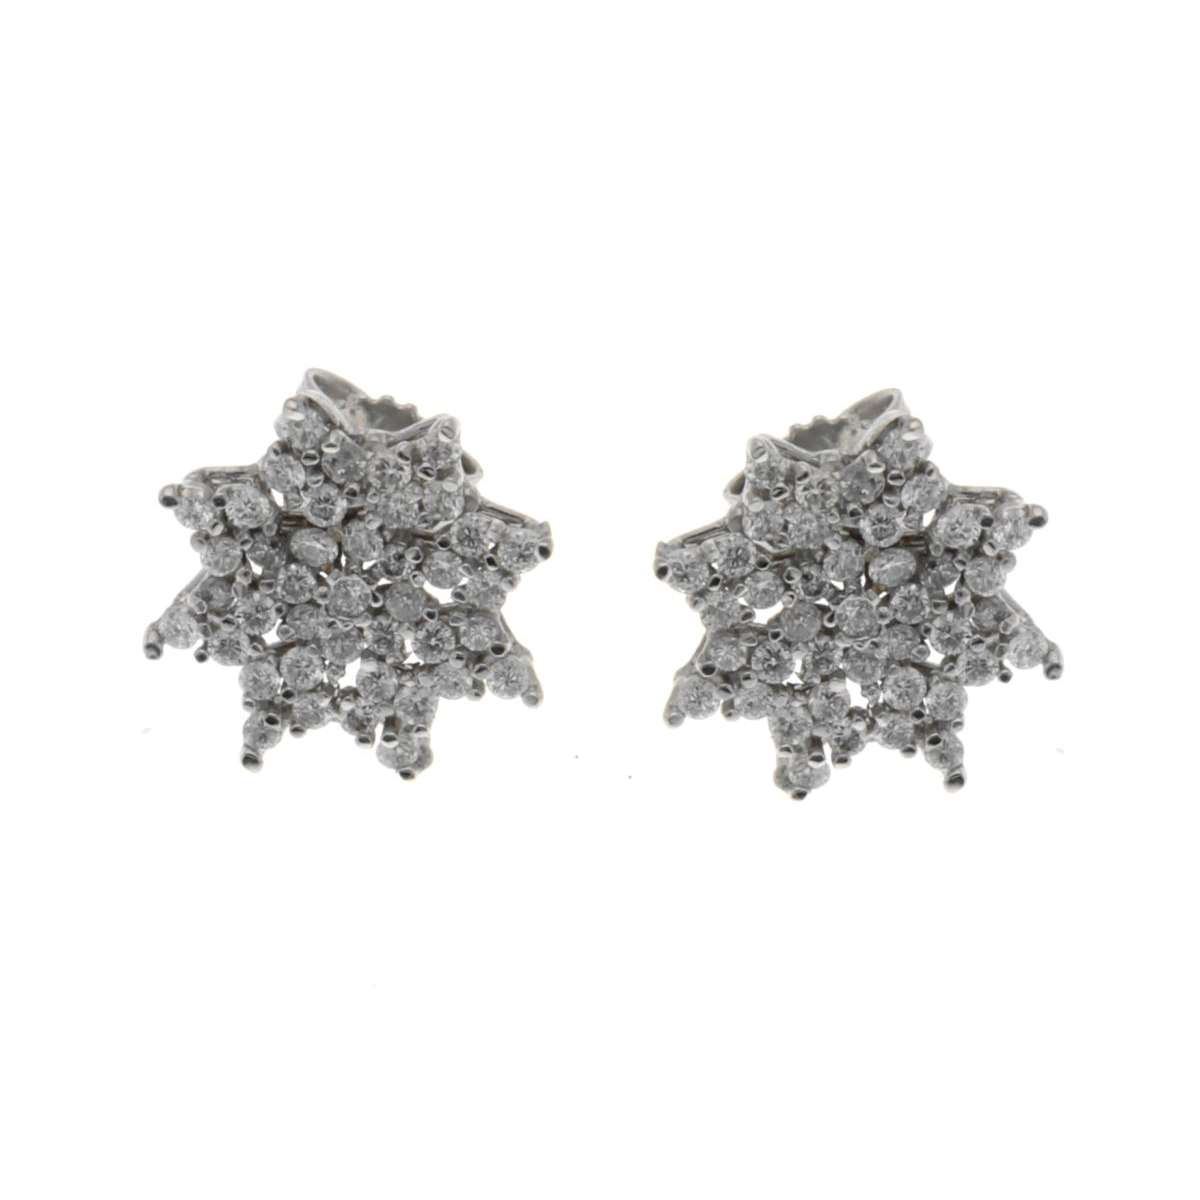 Fancy earrings 0.79 carats diamonds G-VS1 ideal